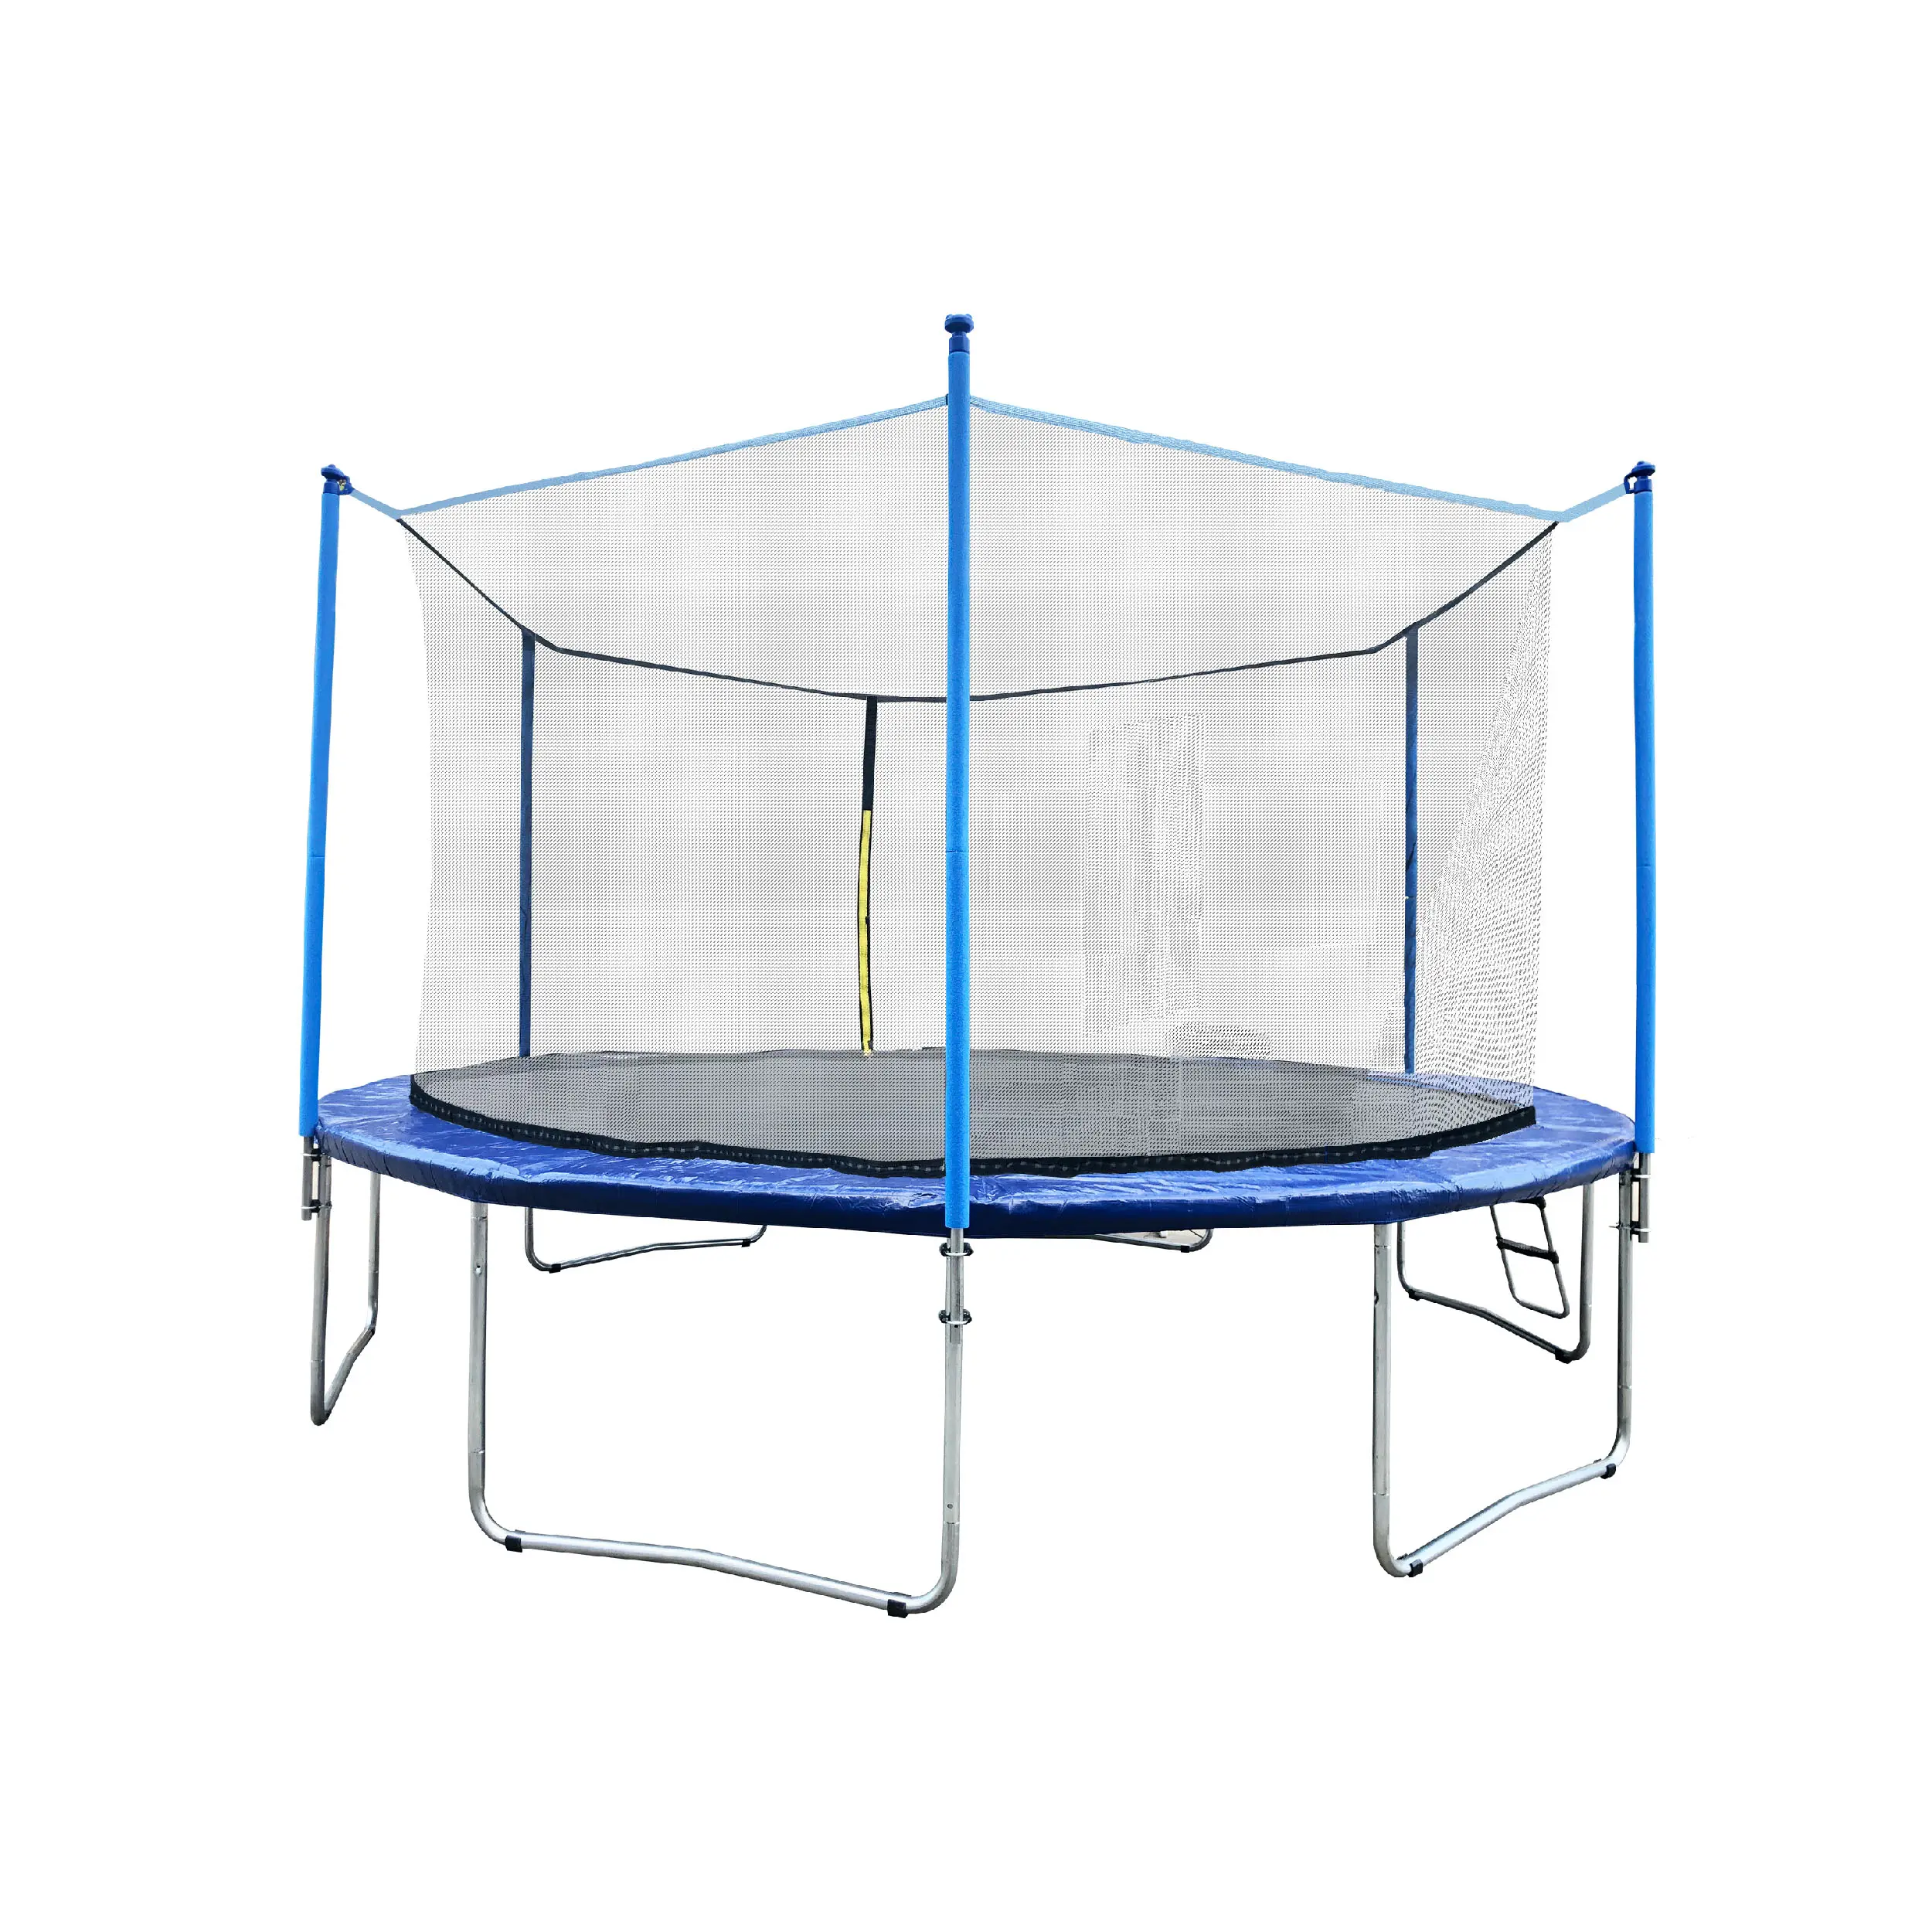 Grande grande trampolino Fitness all'aperto da 16 piedi adulti bambino fitness top trampolino caldo prodotto di qualità di grandi dimensioni con supporto per scala